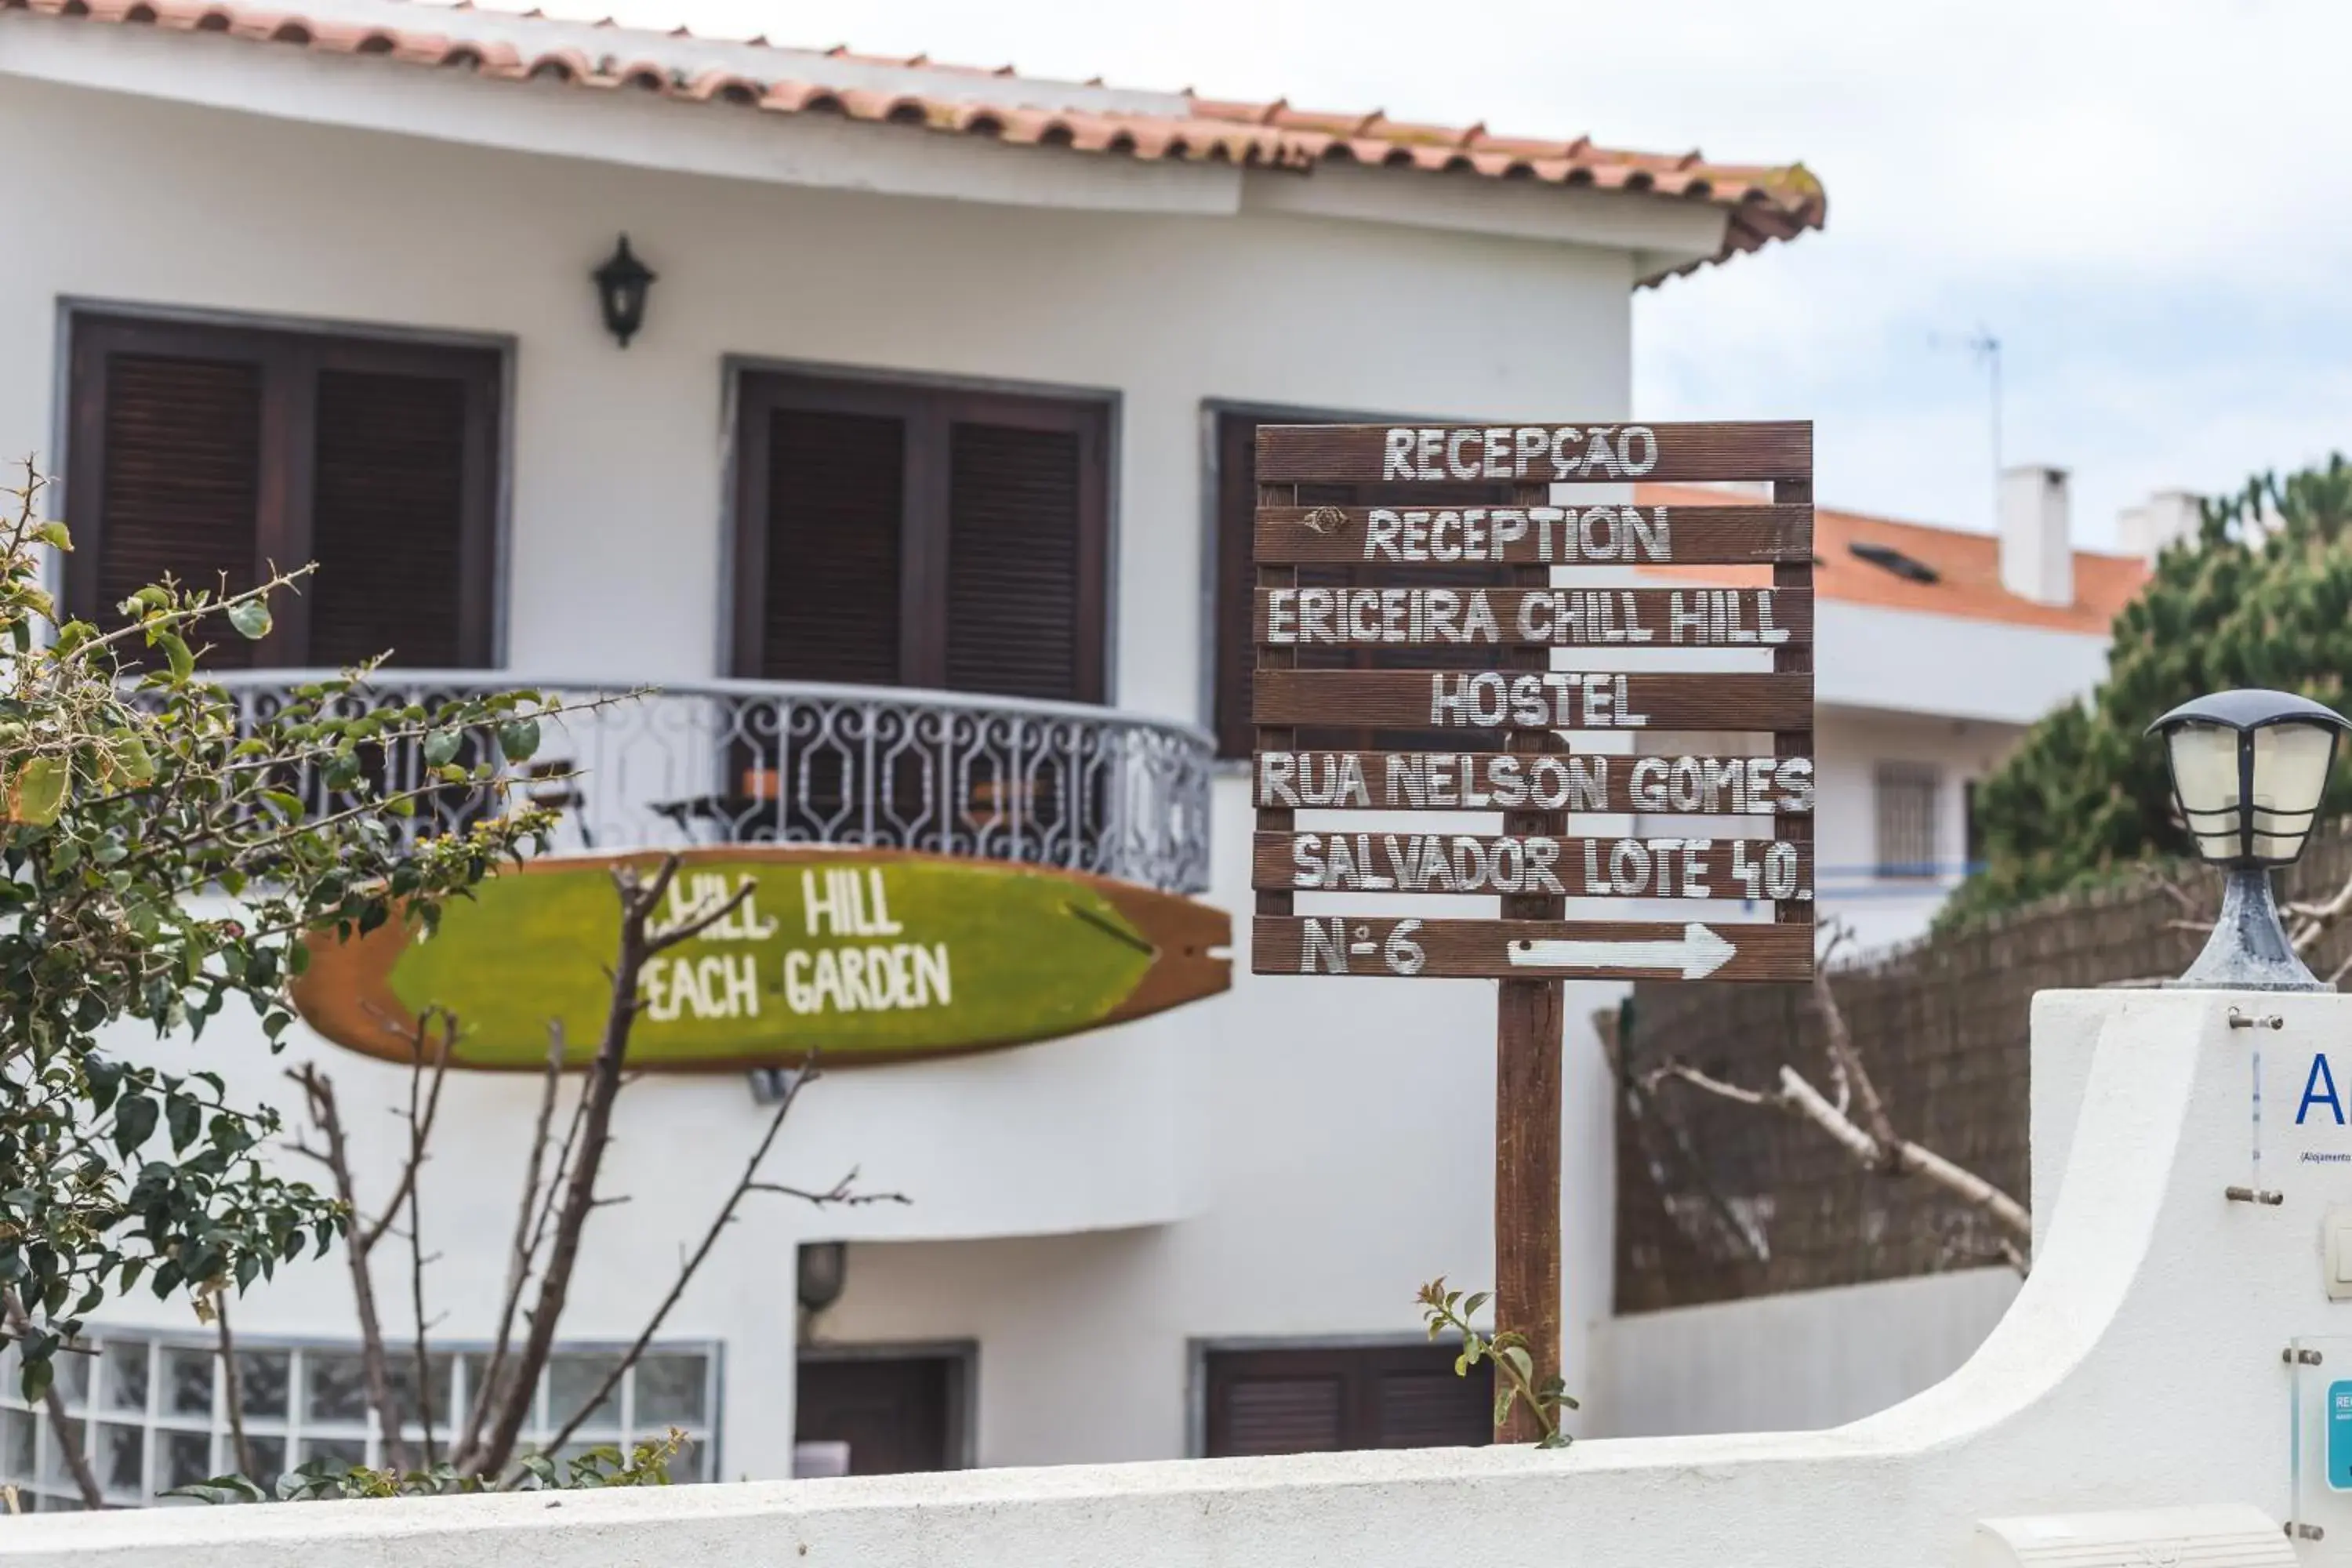 Facade/entrance in Ericeira Chill Hill Hostel & Private Rooms - Peach Garden